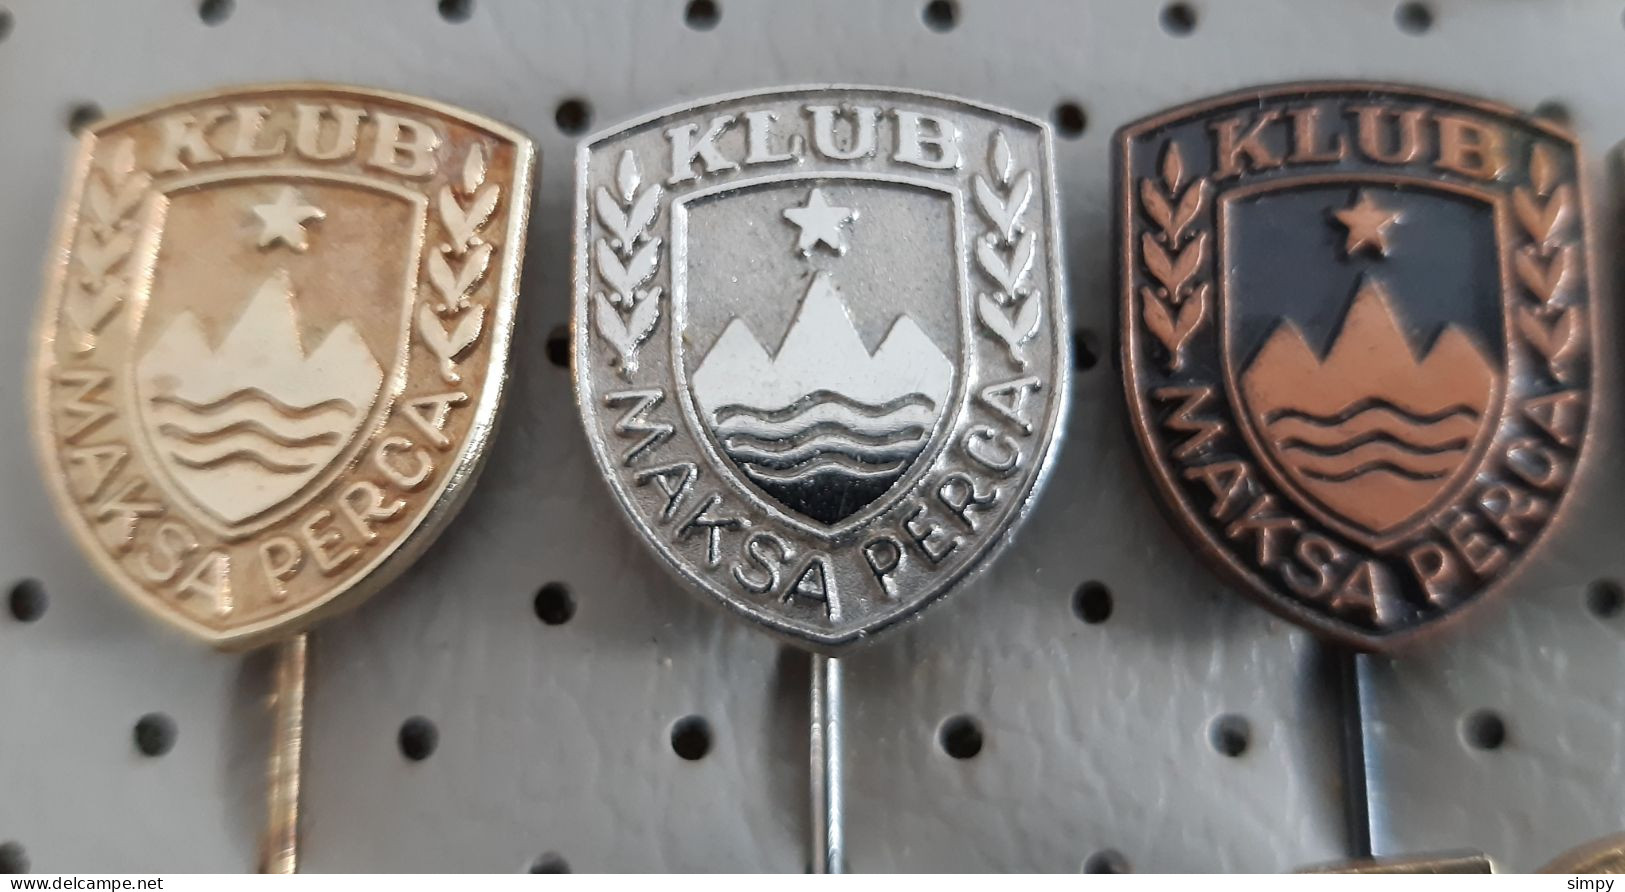 POLICE Club Maksa Perca  Slovenia Pins - Police